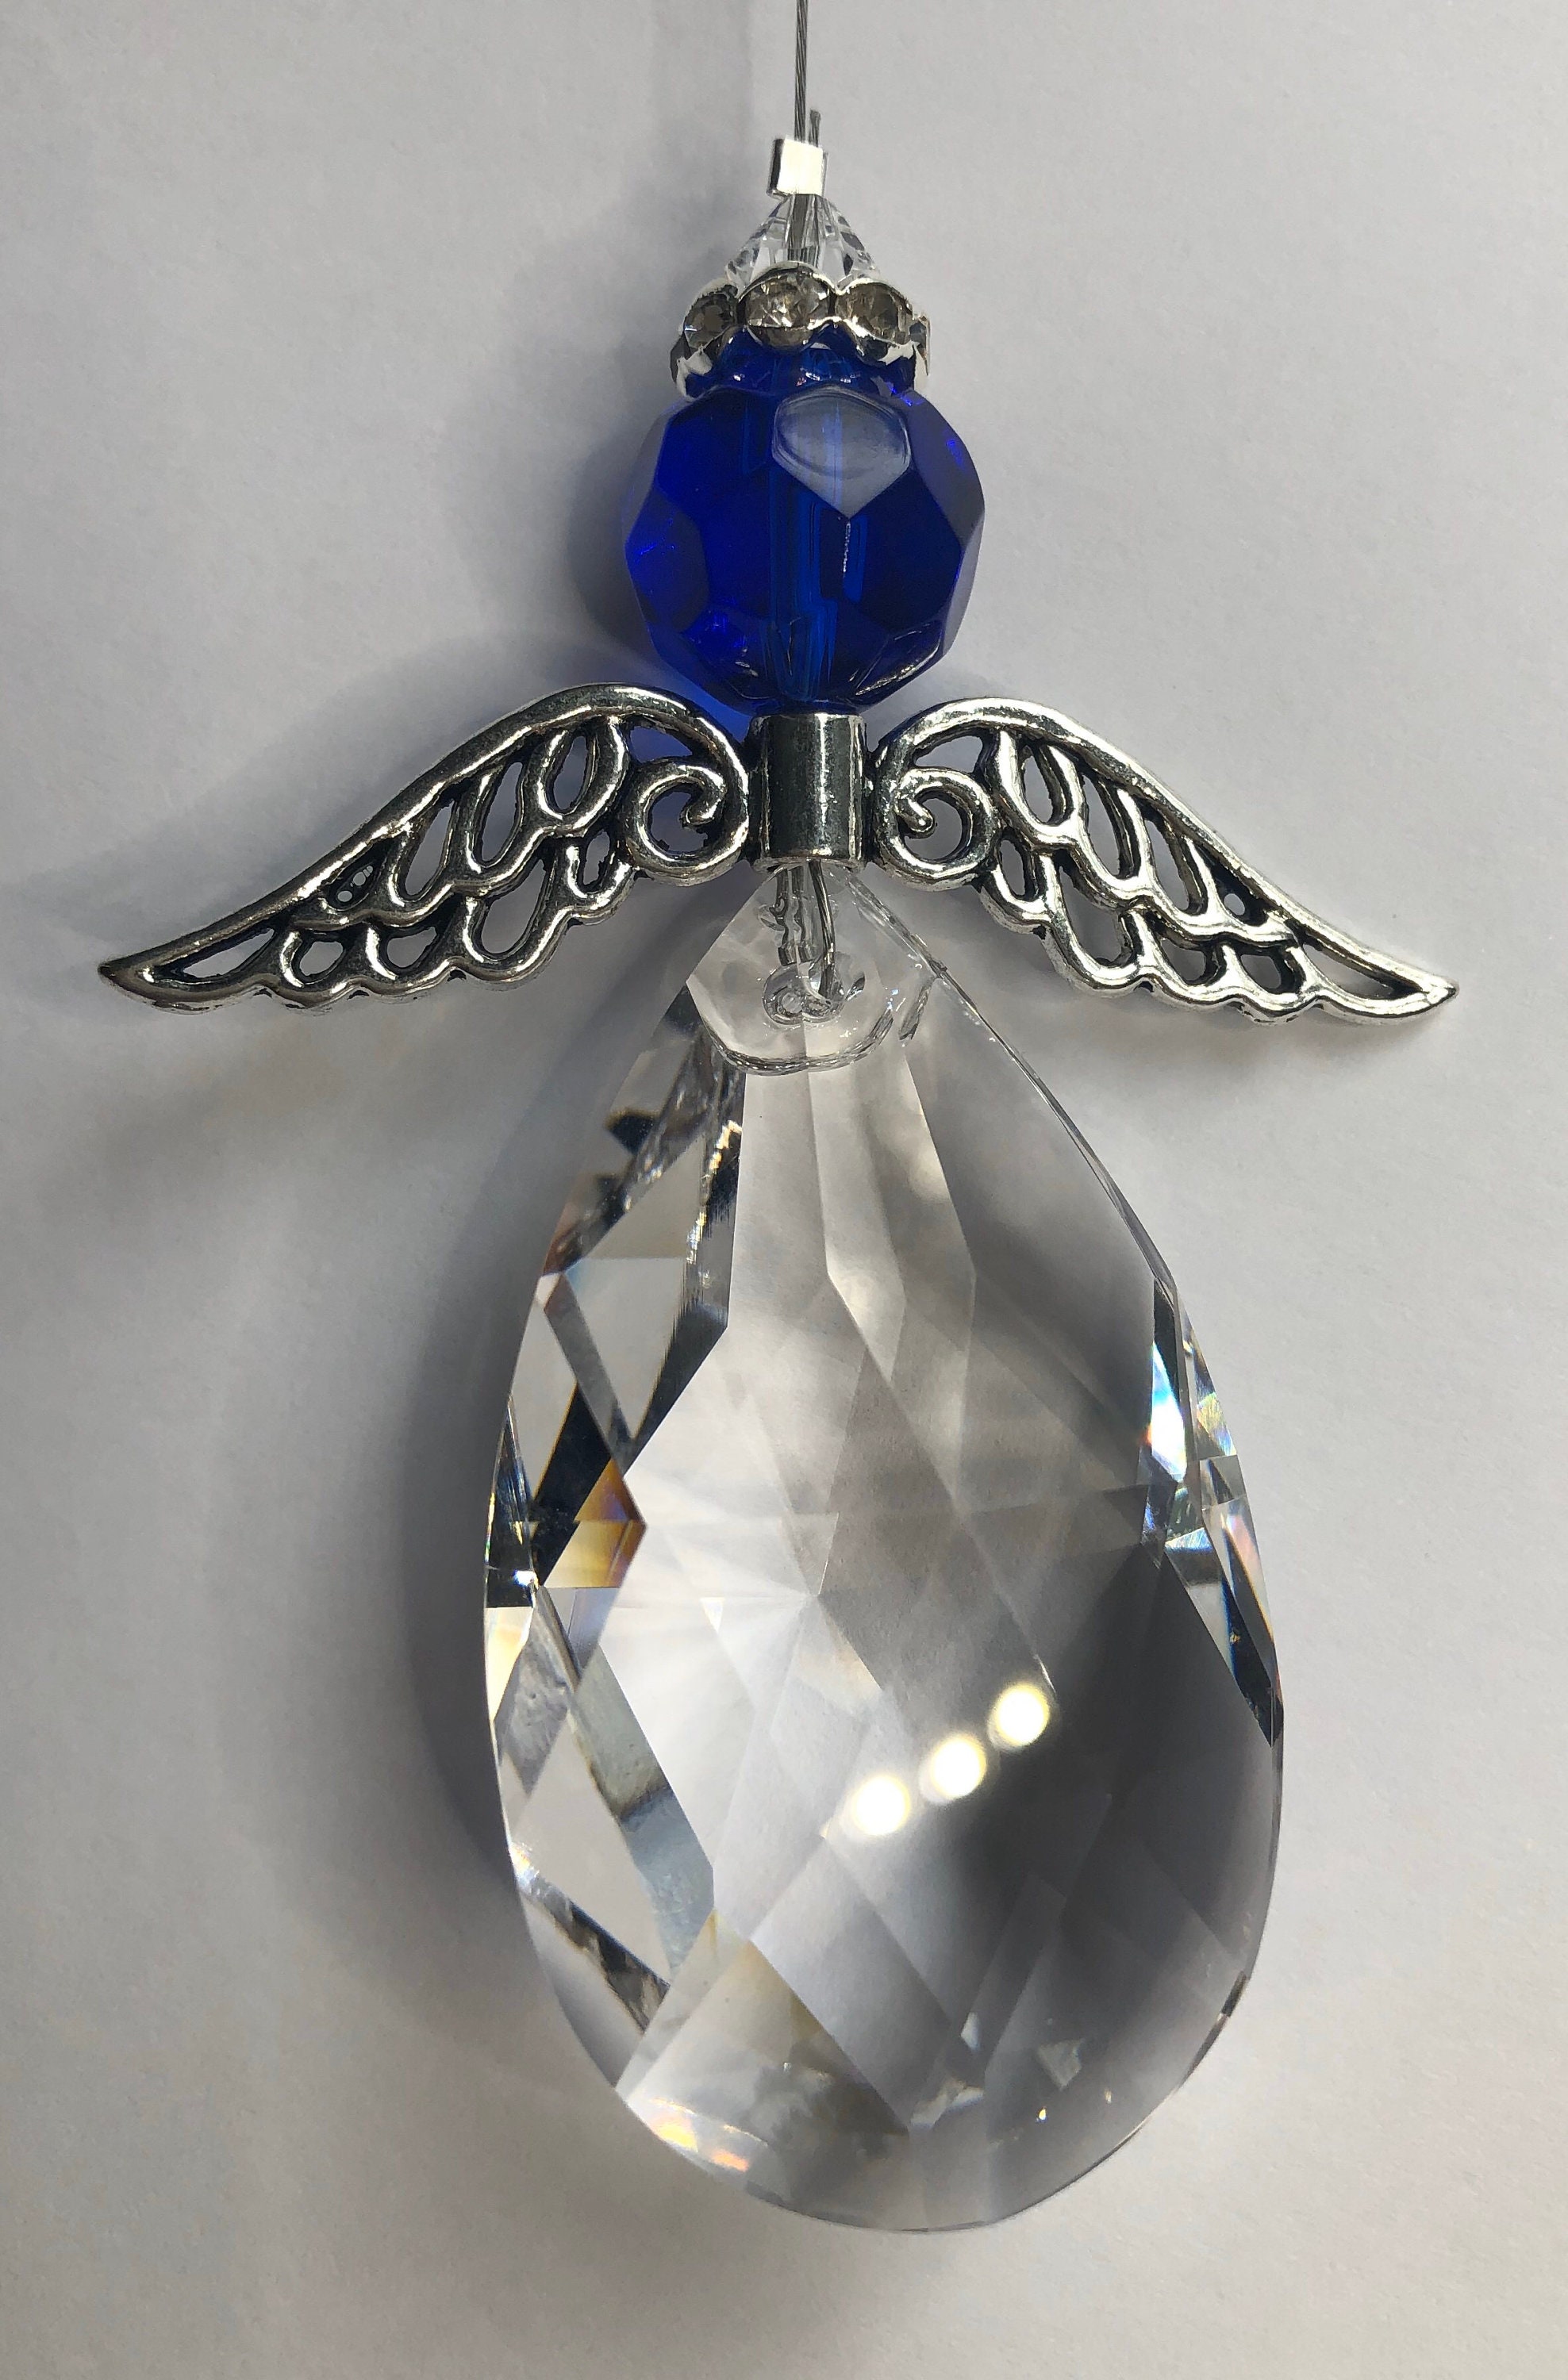 Attrape-soleil ange en cristal bleu royal pour Windows, fabricant